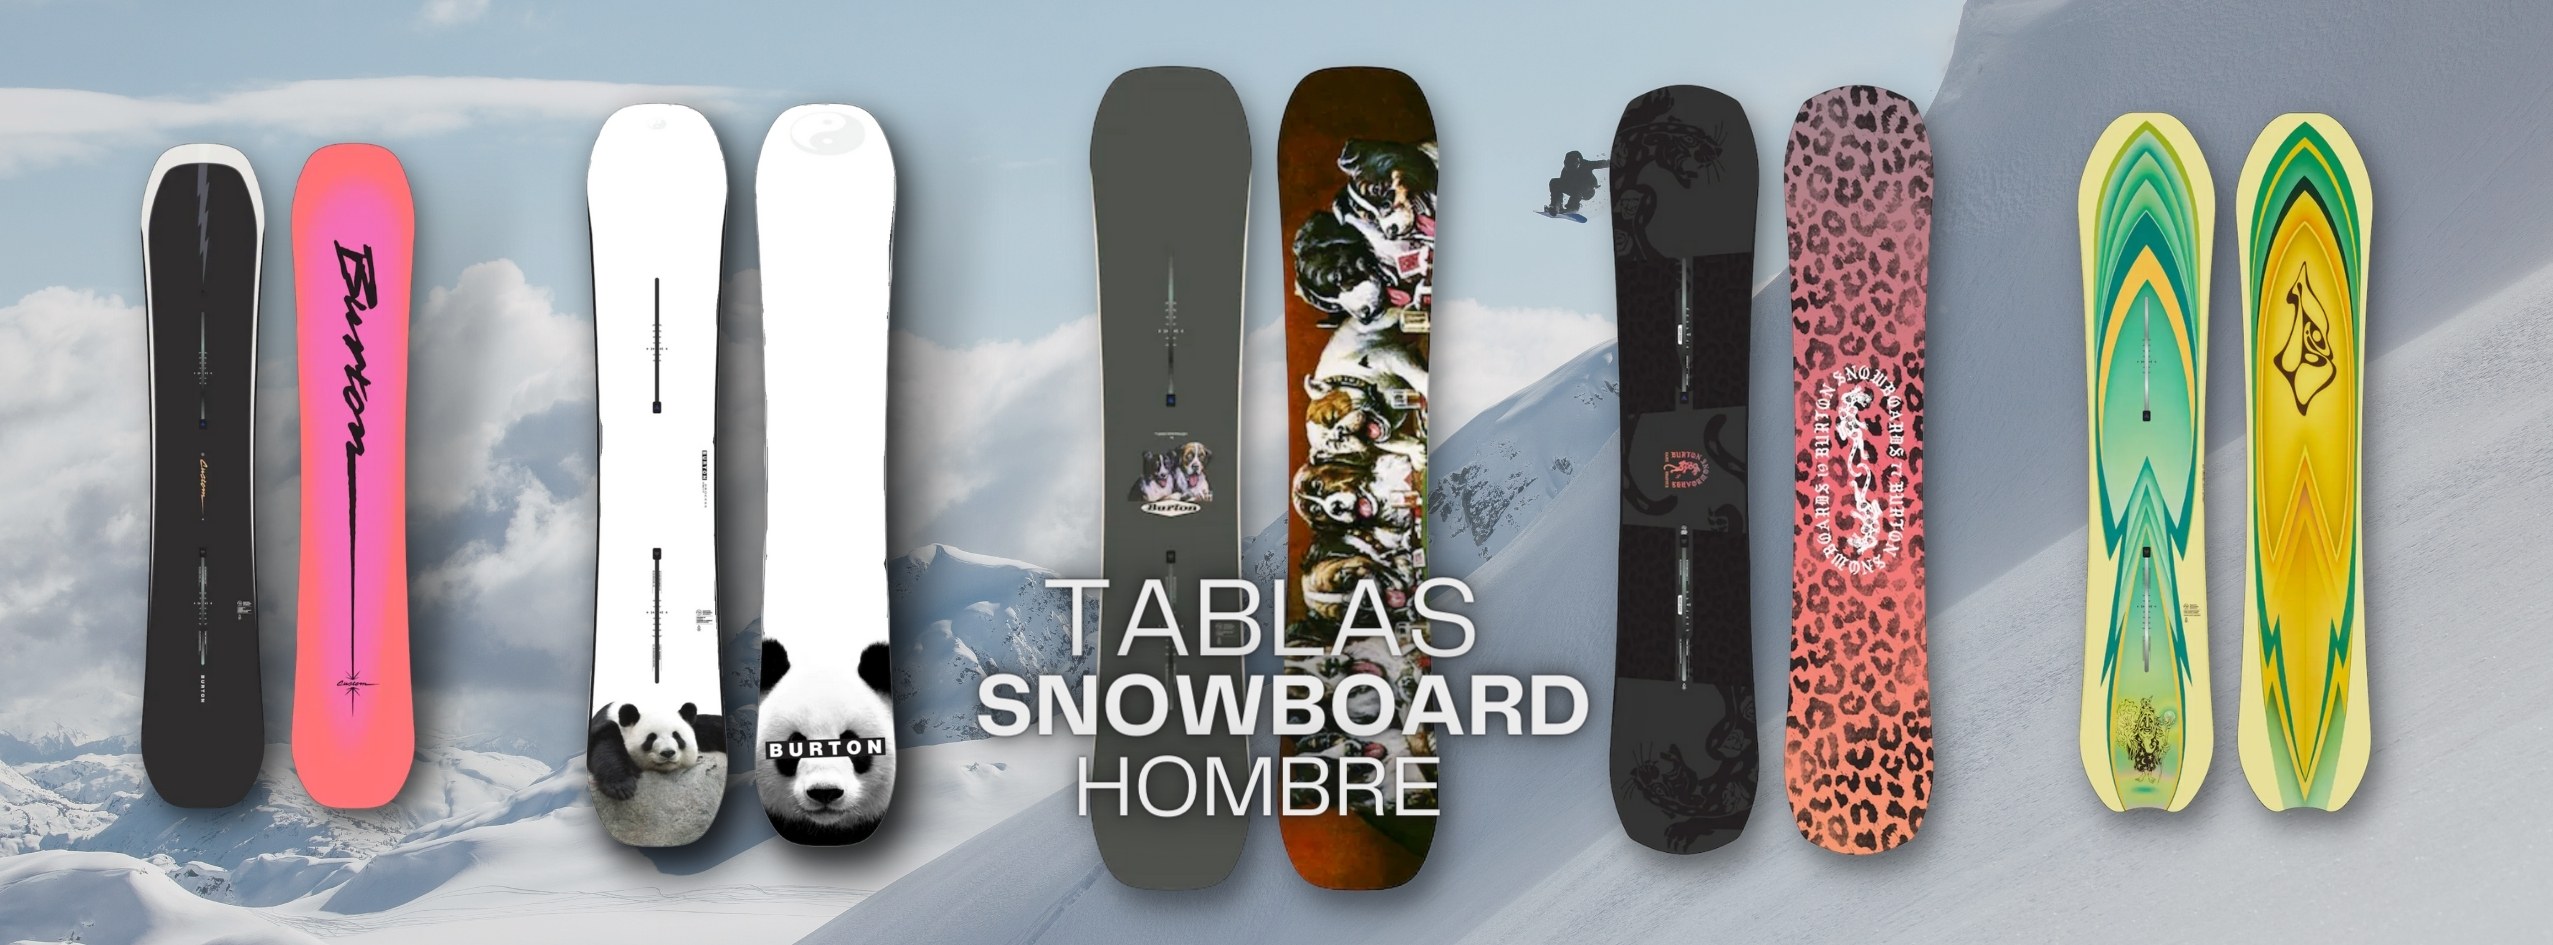 Todas las tablas de snowboard para hombre en tu tienda de Baqueira, ahora tembién online. Envíos nacionales - Cabin Fever Shop 